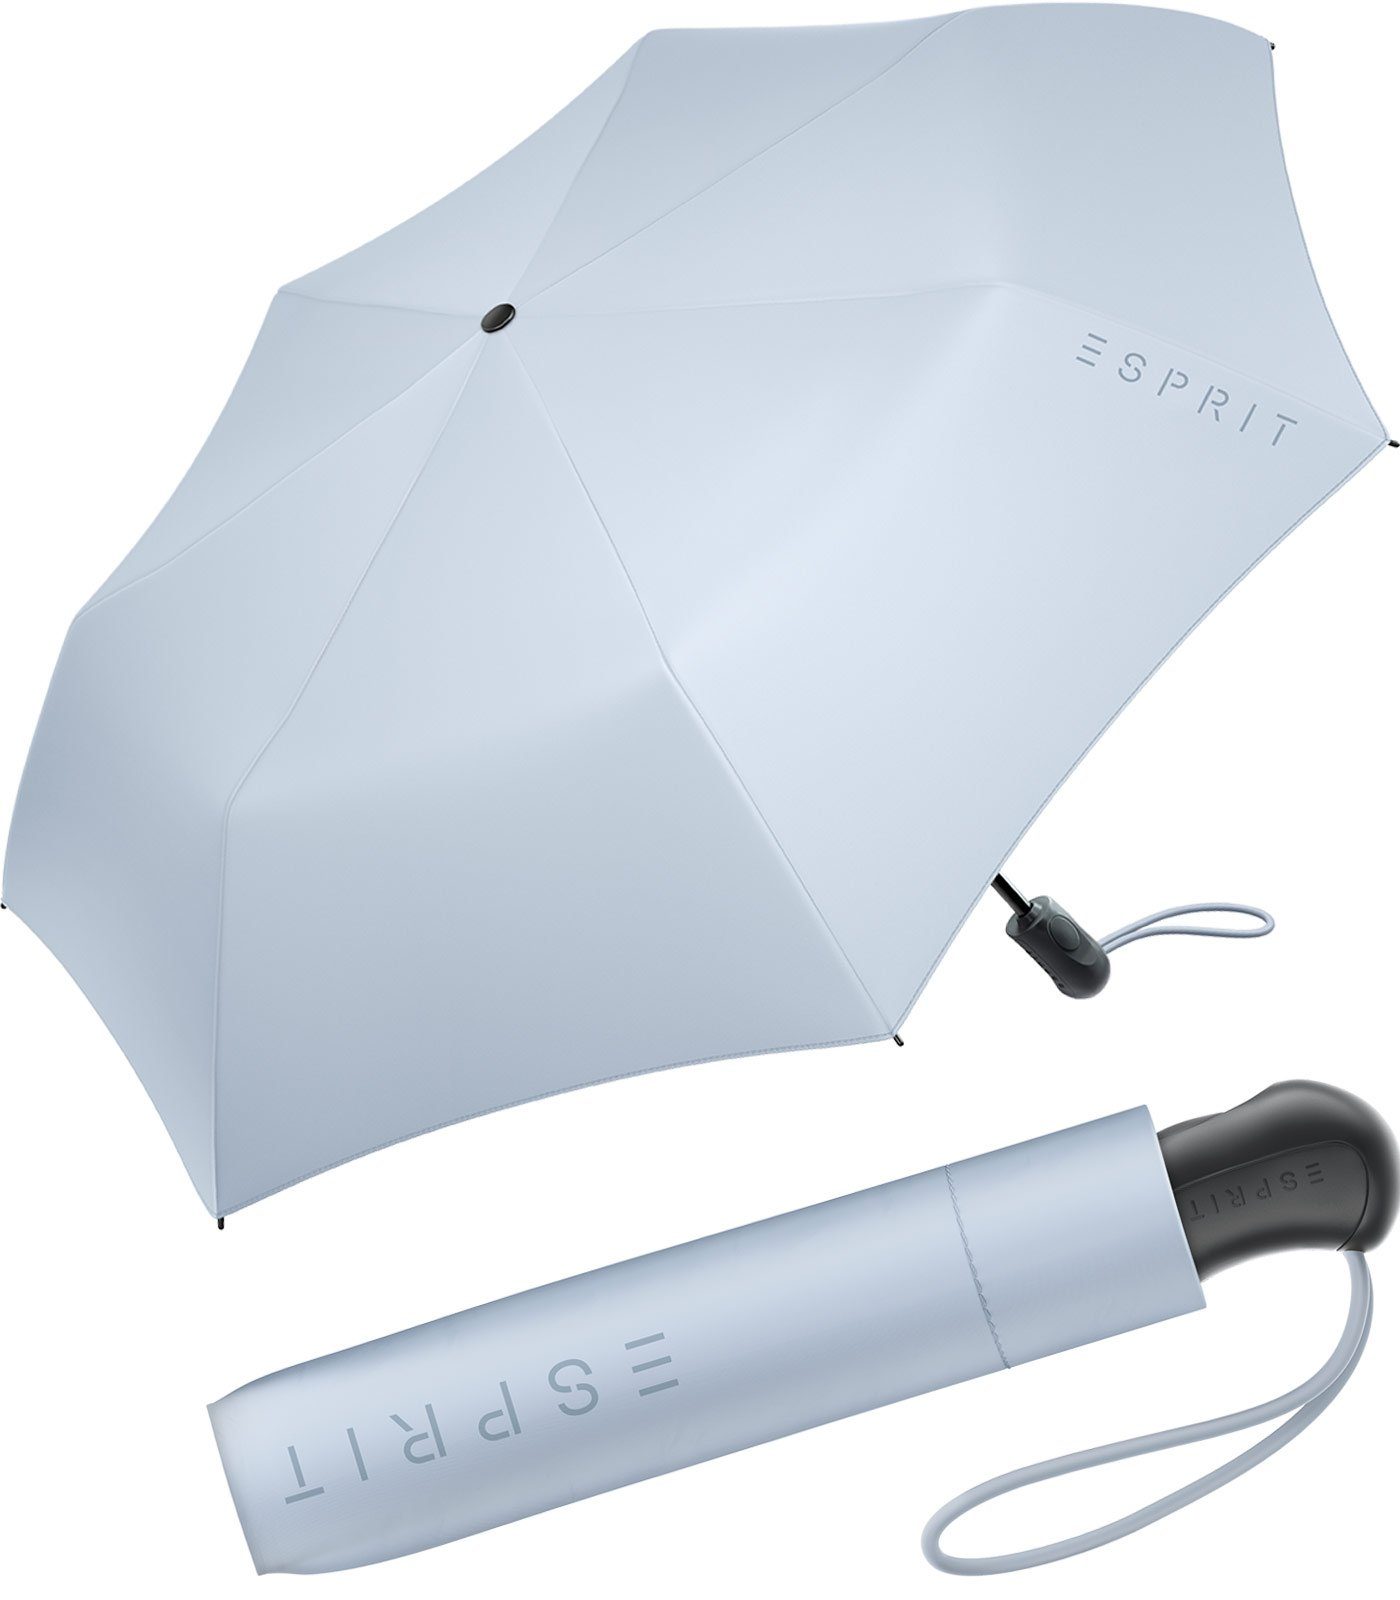 Esprit Taschenregenschirm Damen Easymatic Light Auf-Zu Automatik FJ 2022, stabil und praktisch, in den neuen Trendfarben blau | Taschenschirme